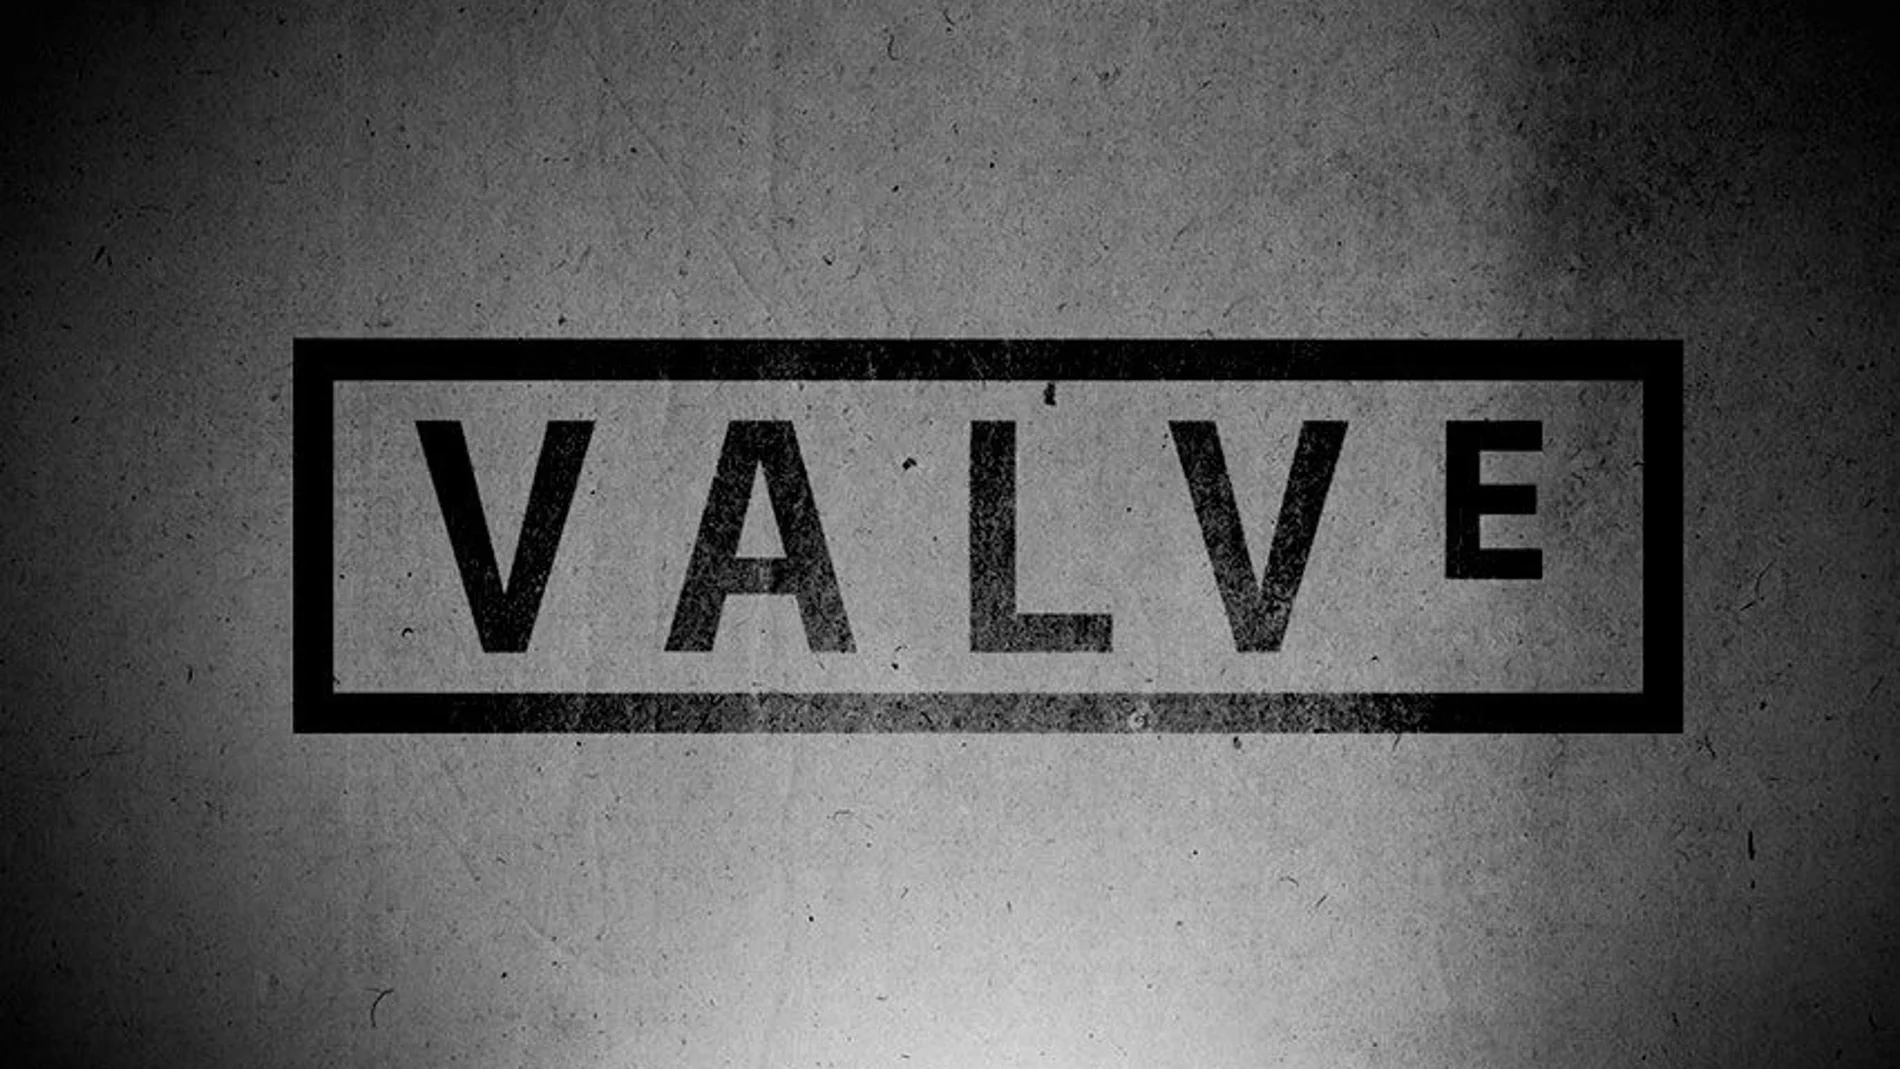 Valve soluciona los errores con la caché de Steam